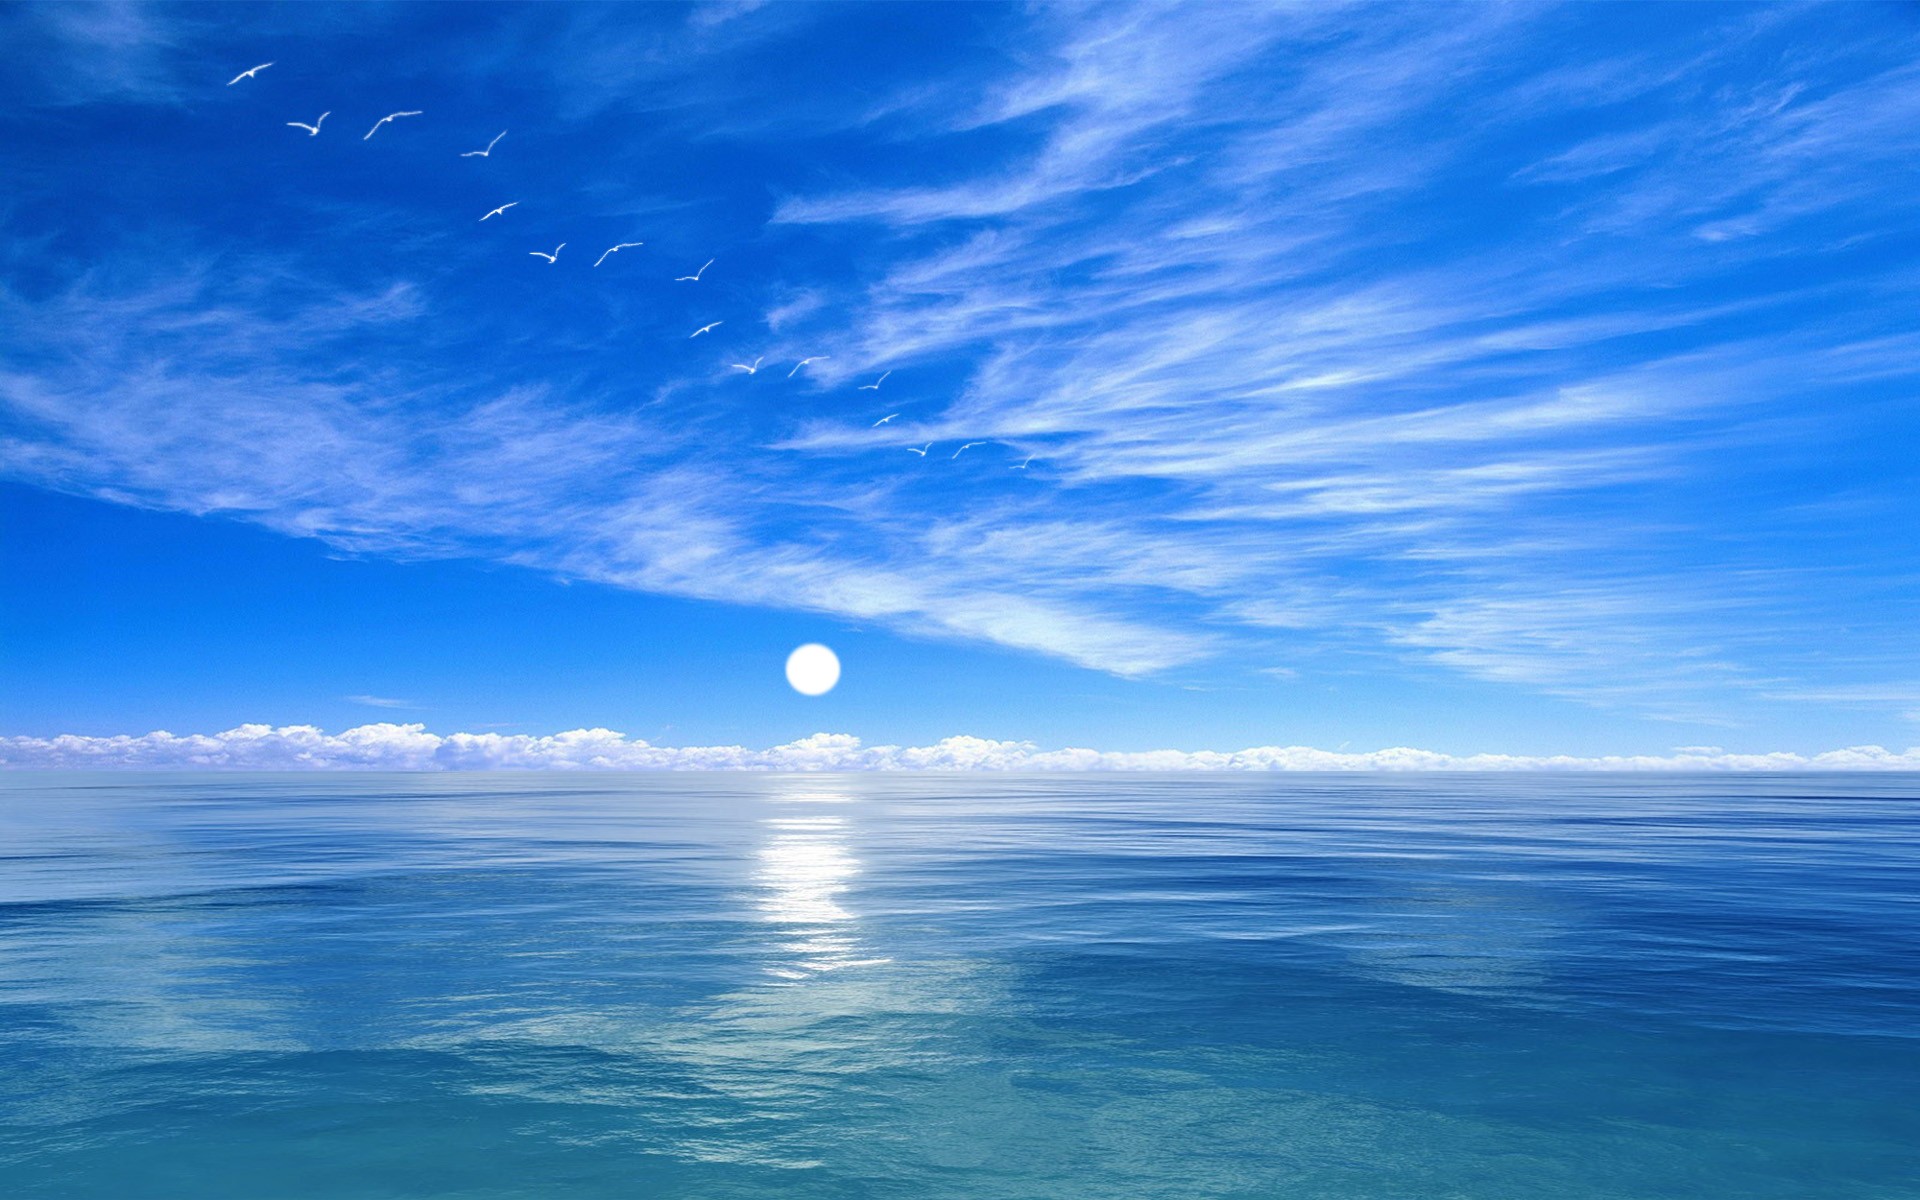 Скачать обои бесплатно Небо, Море, Чайки, Луна, Горизонт, Океан, Синий, Земля/природа картинка на рабочий стол ПК